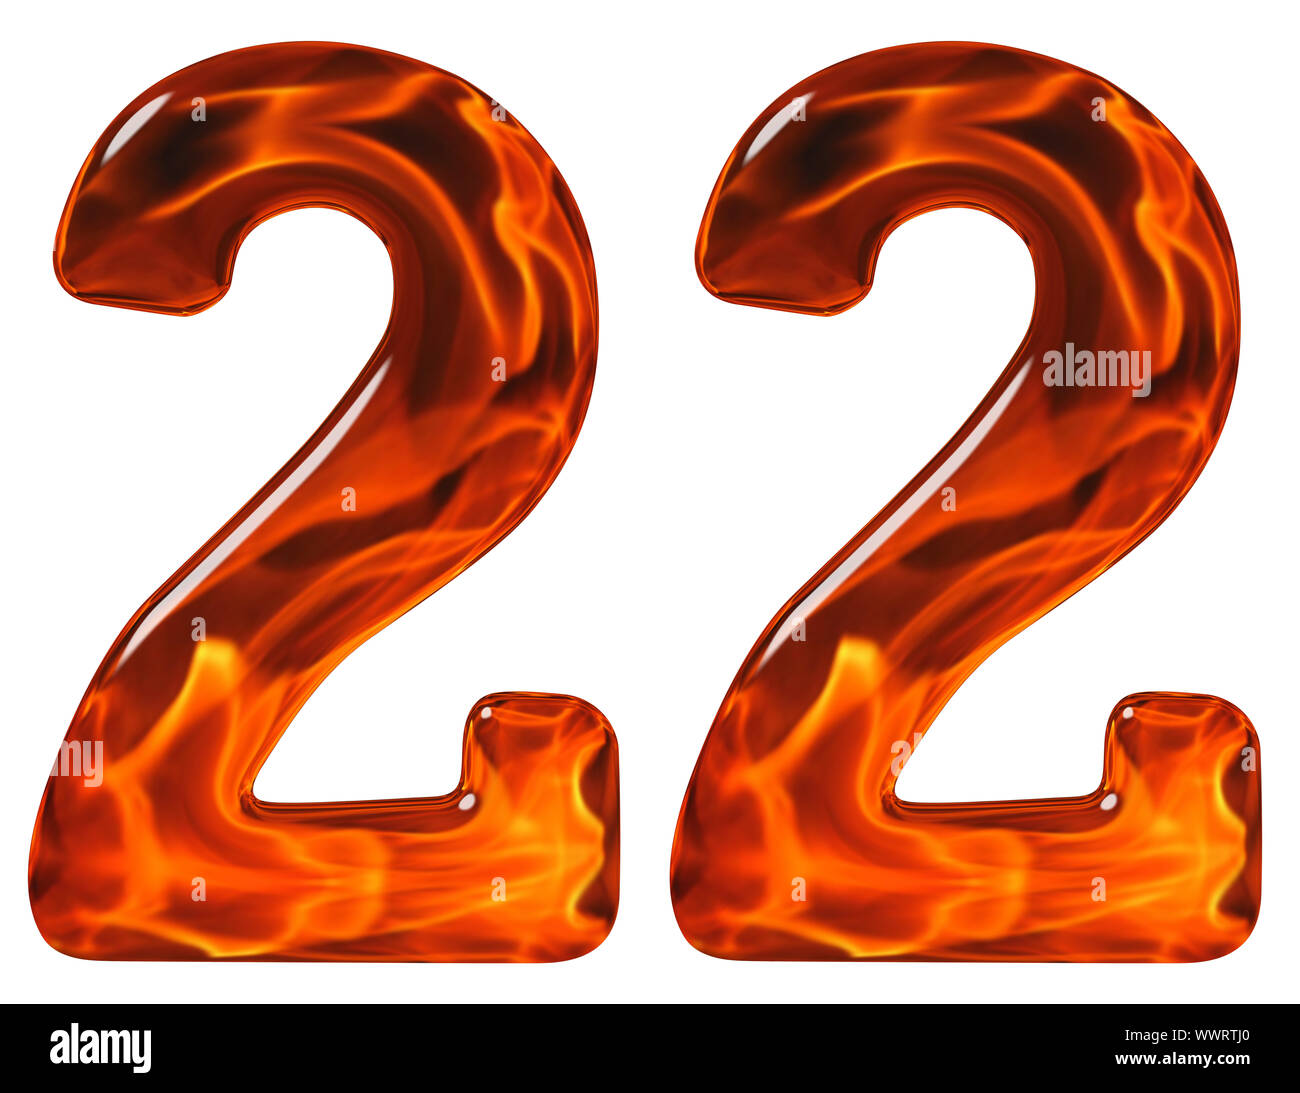 22, 22, numeral, imitaciones de vidrio y un fuego llameante, aislado sobre fondo blanco. Foto de stock